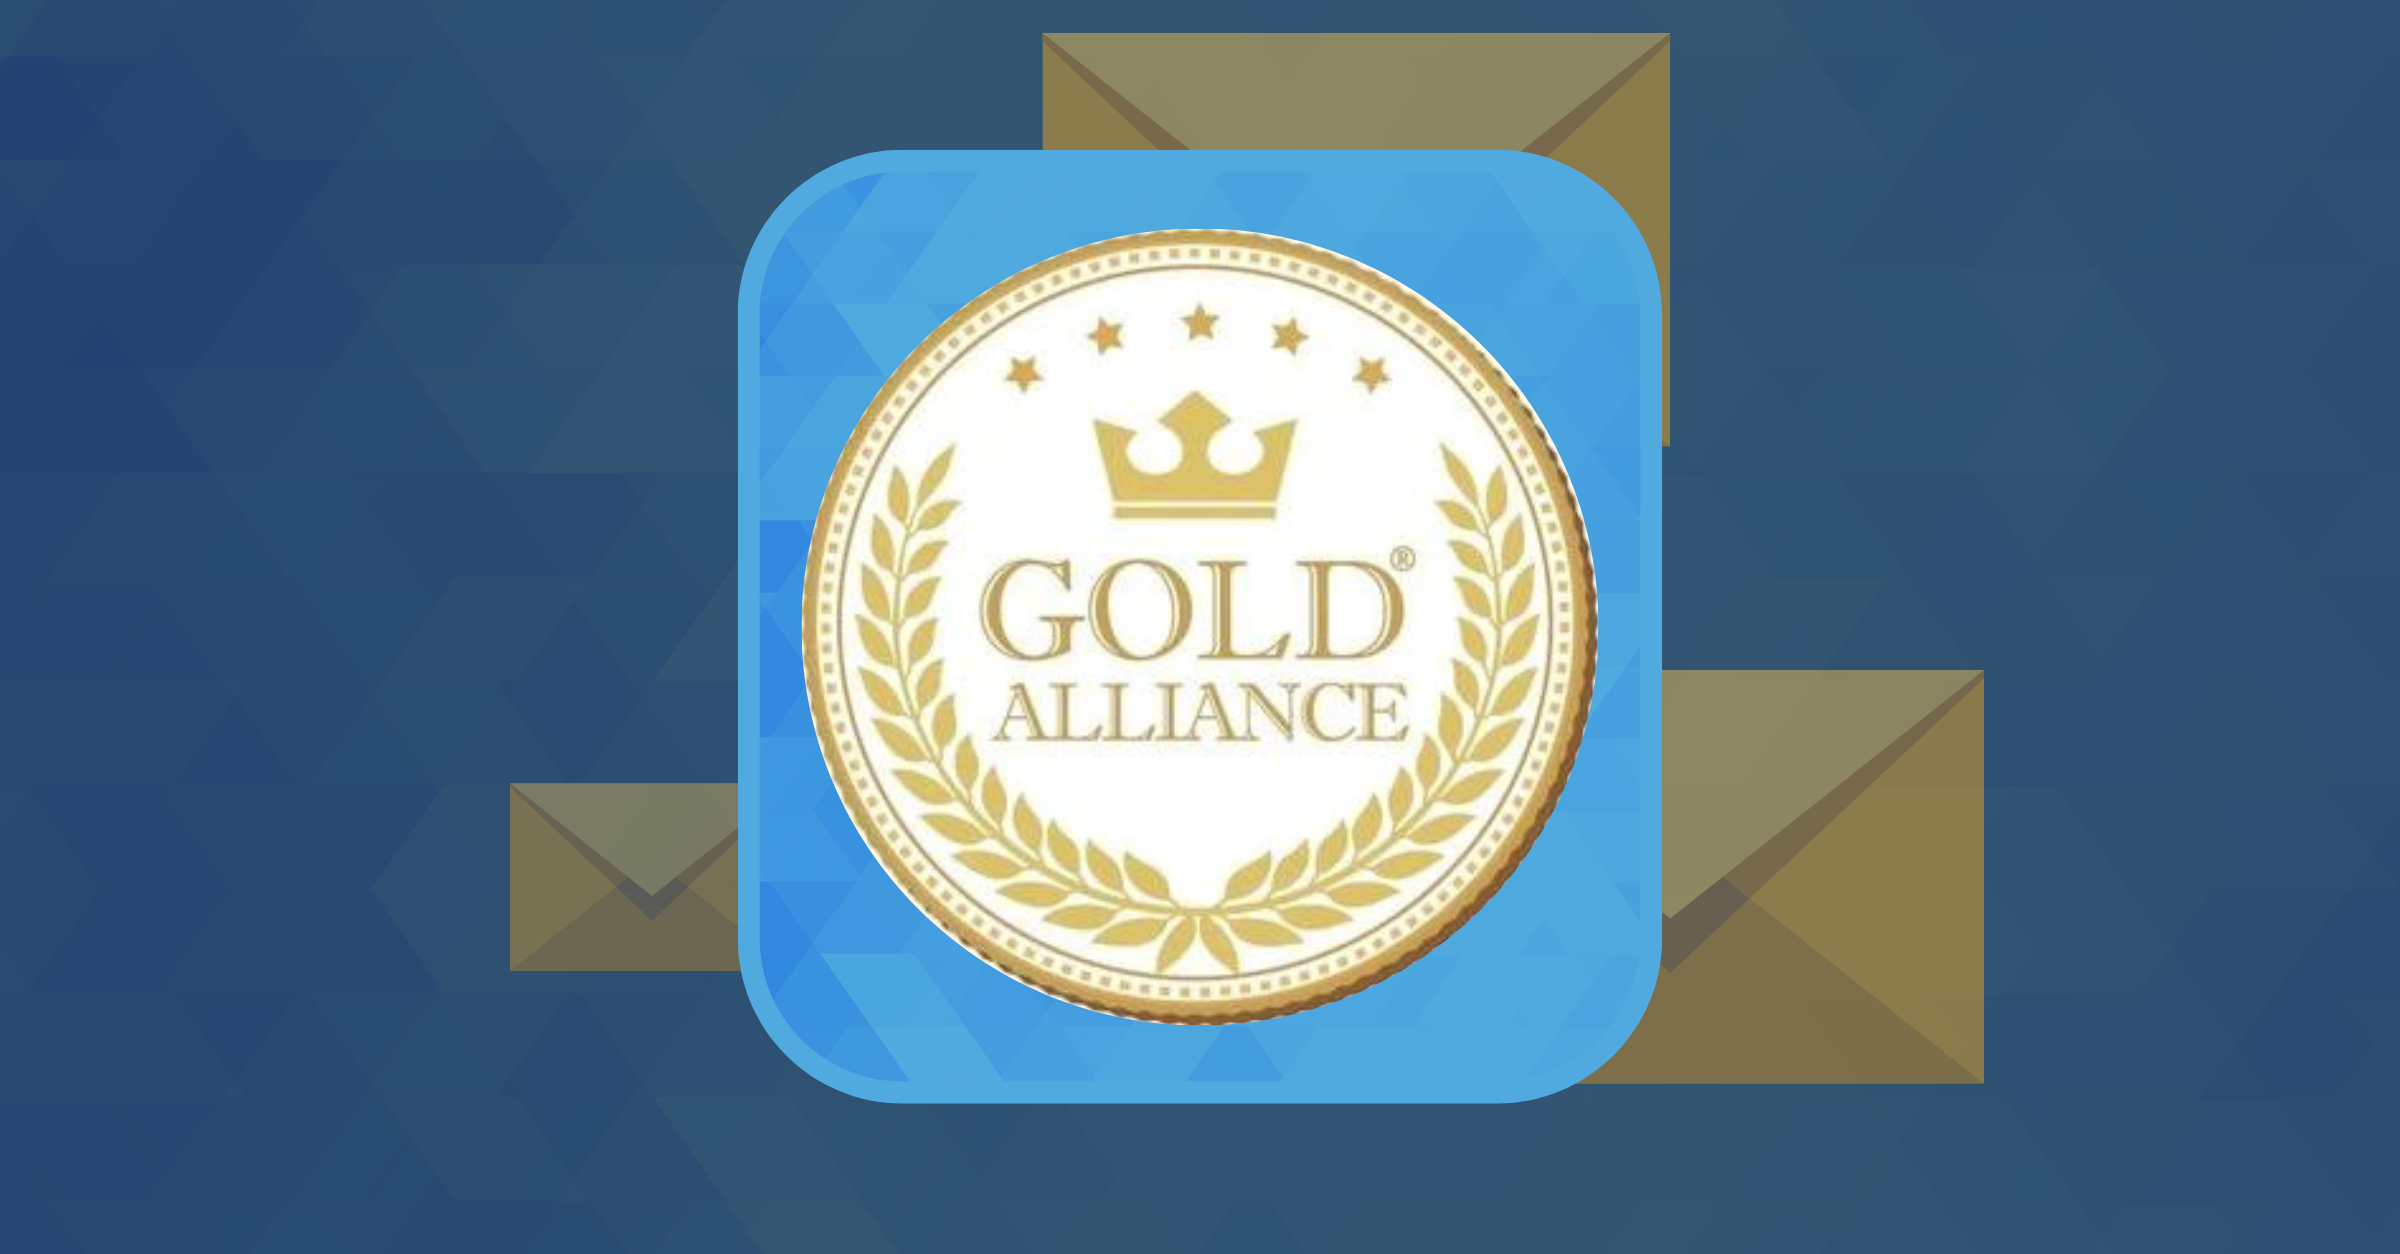 Gold Alliance case study blog image